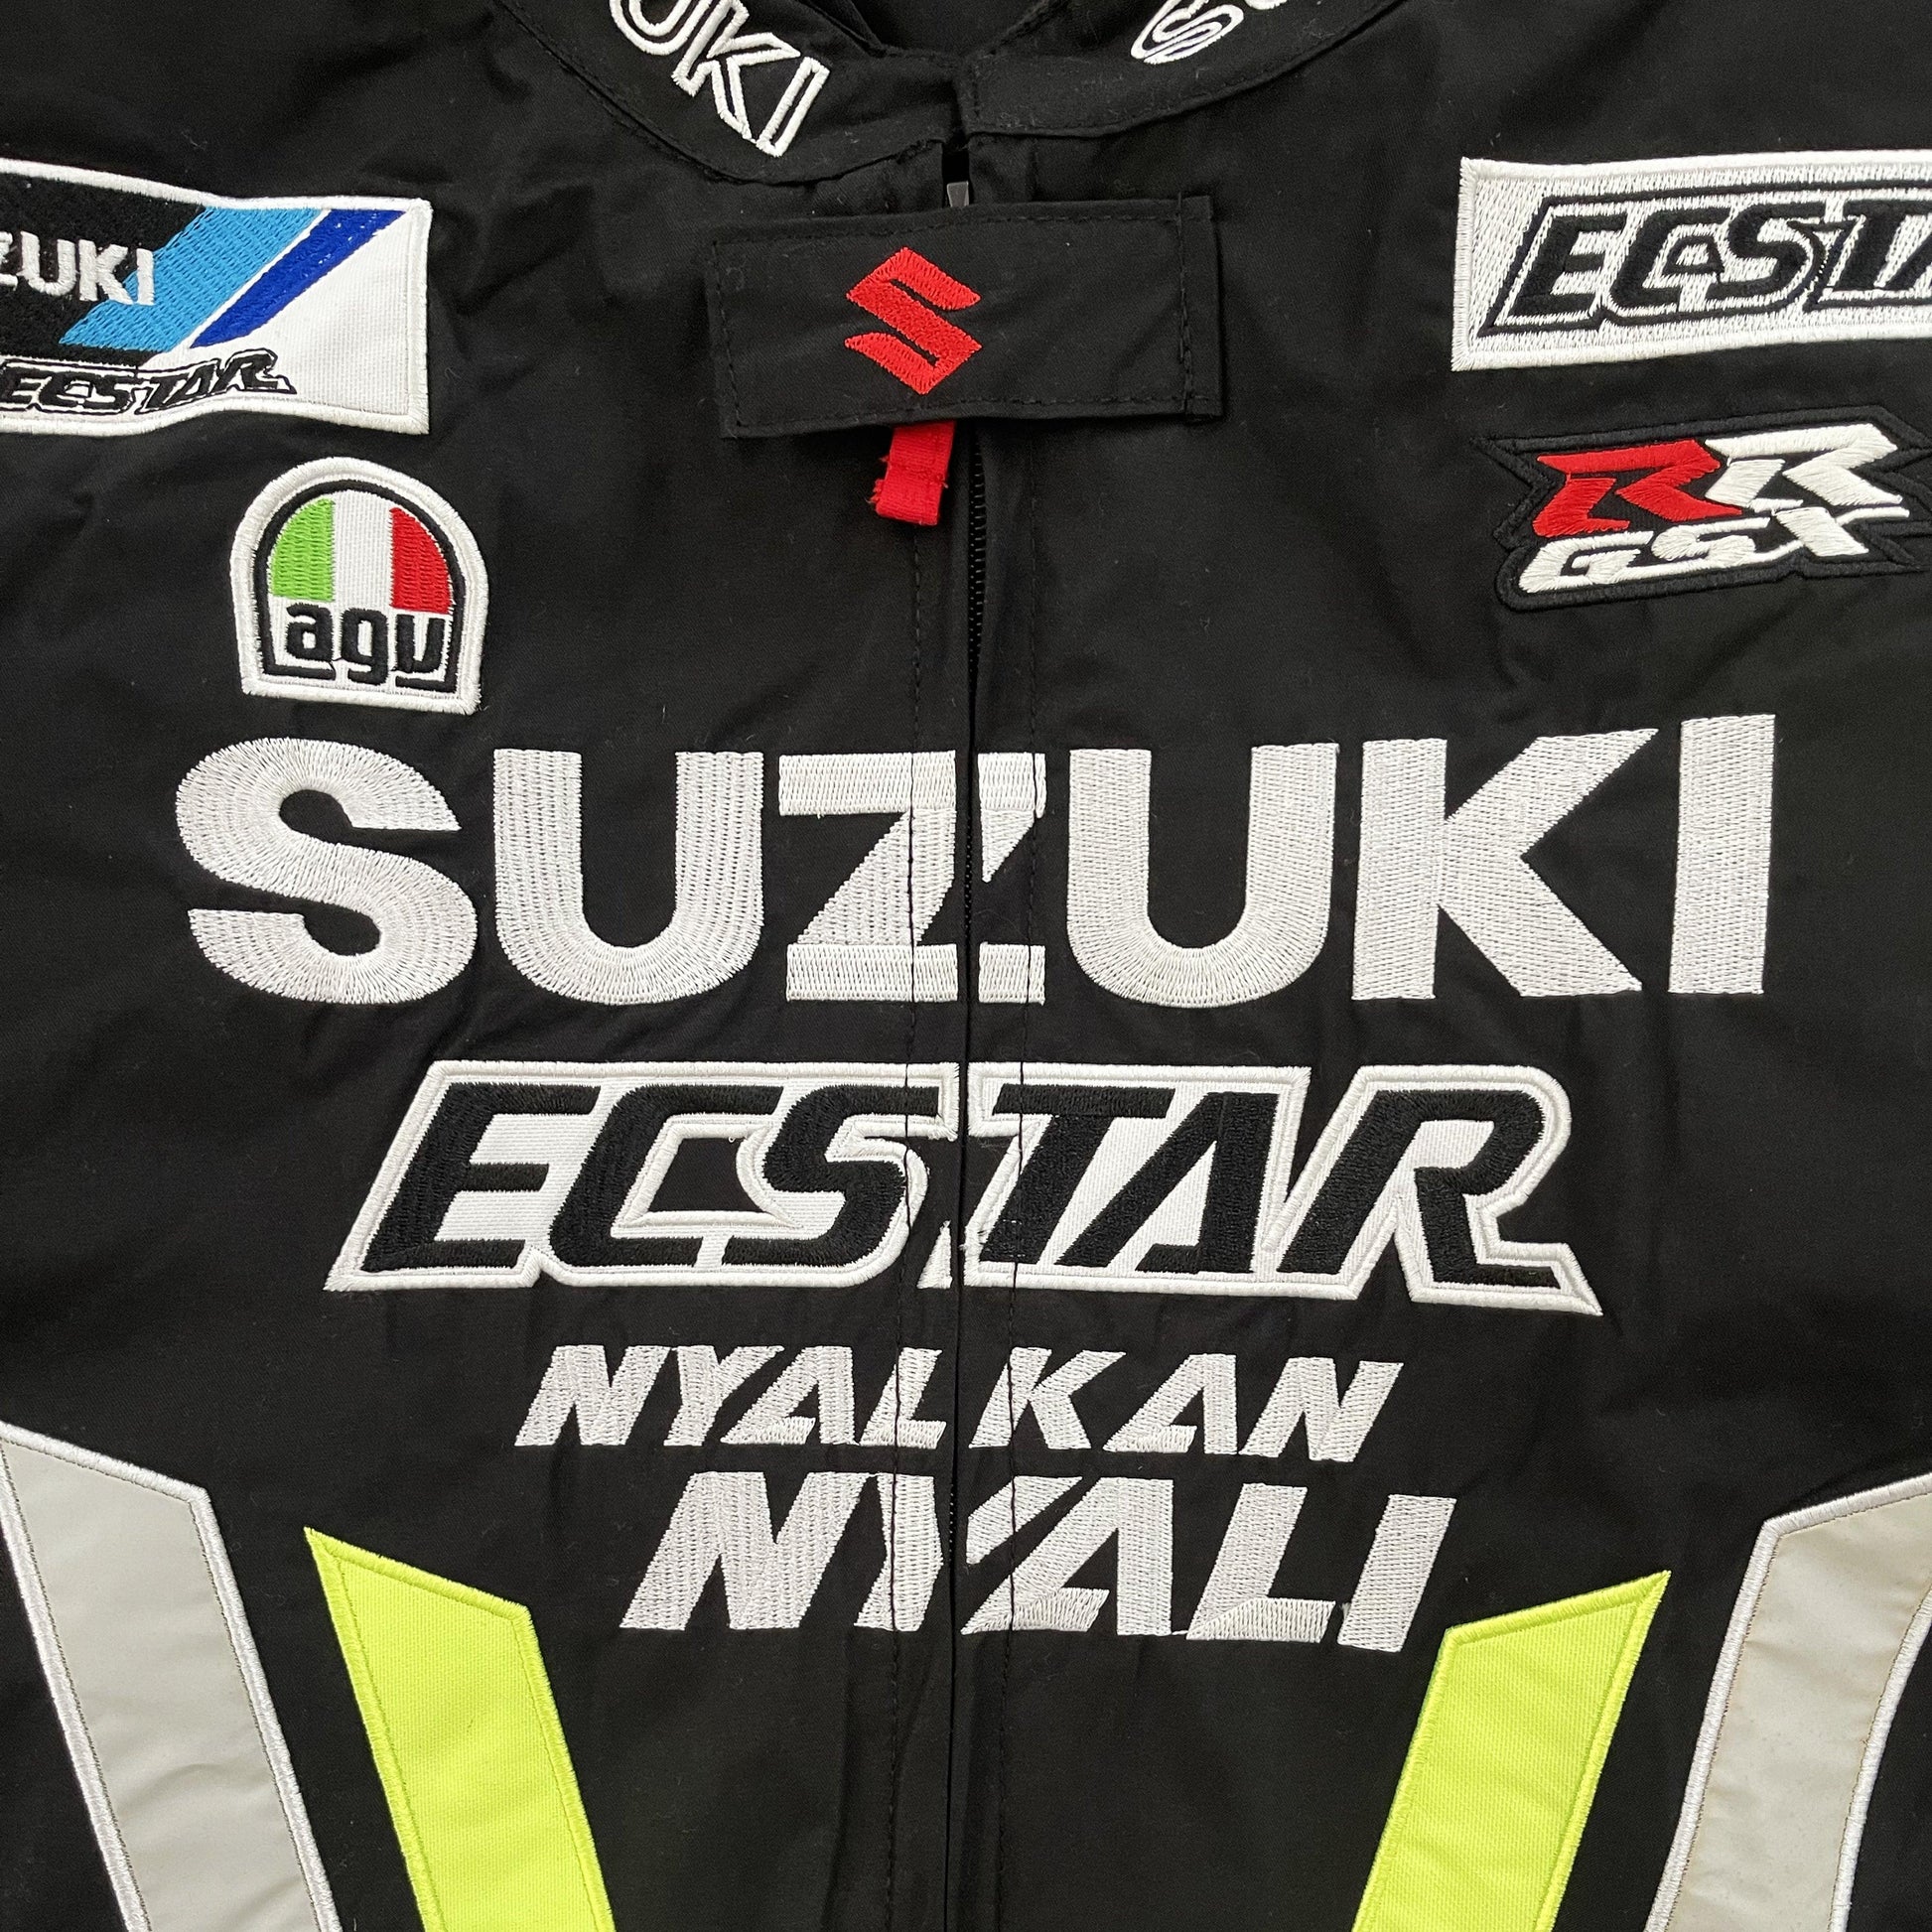 Suzuki Motorcycle Racer Jacket - Known Source